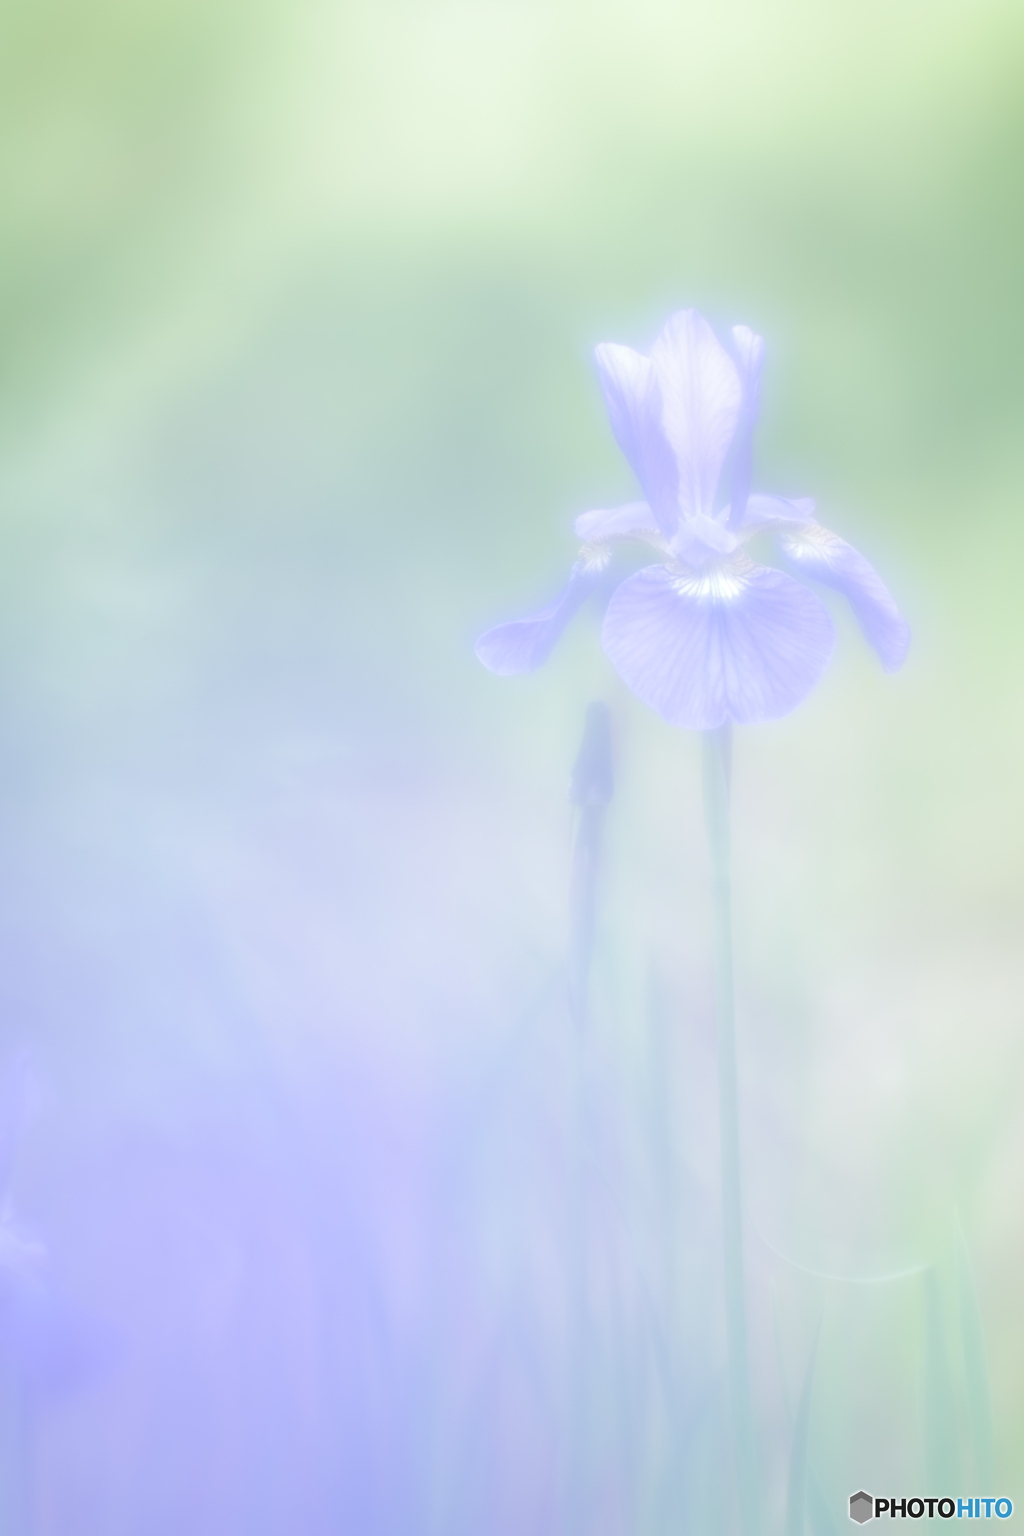 「Siberian iris」